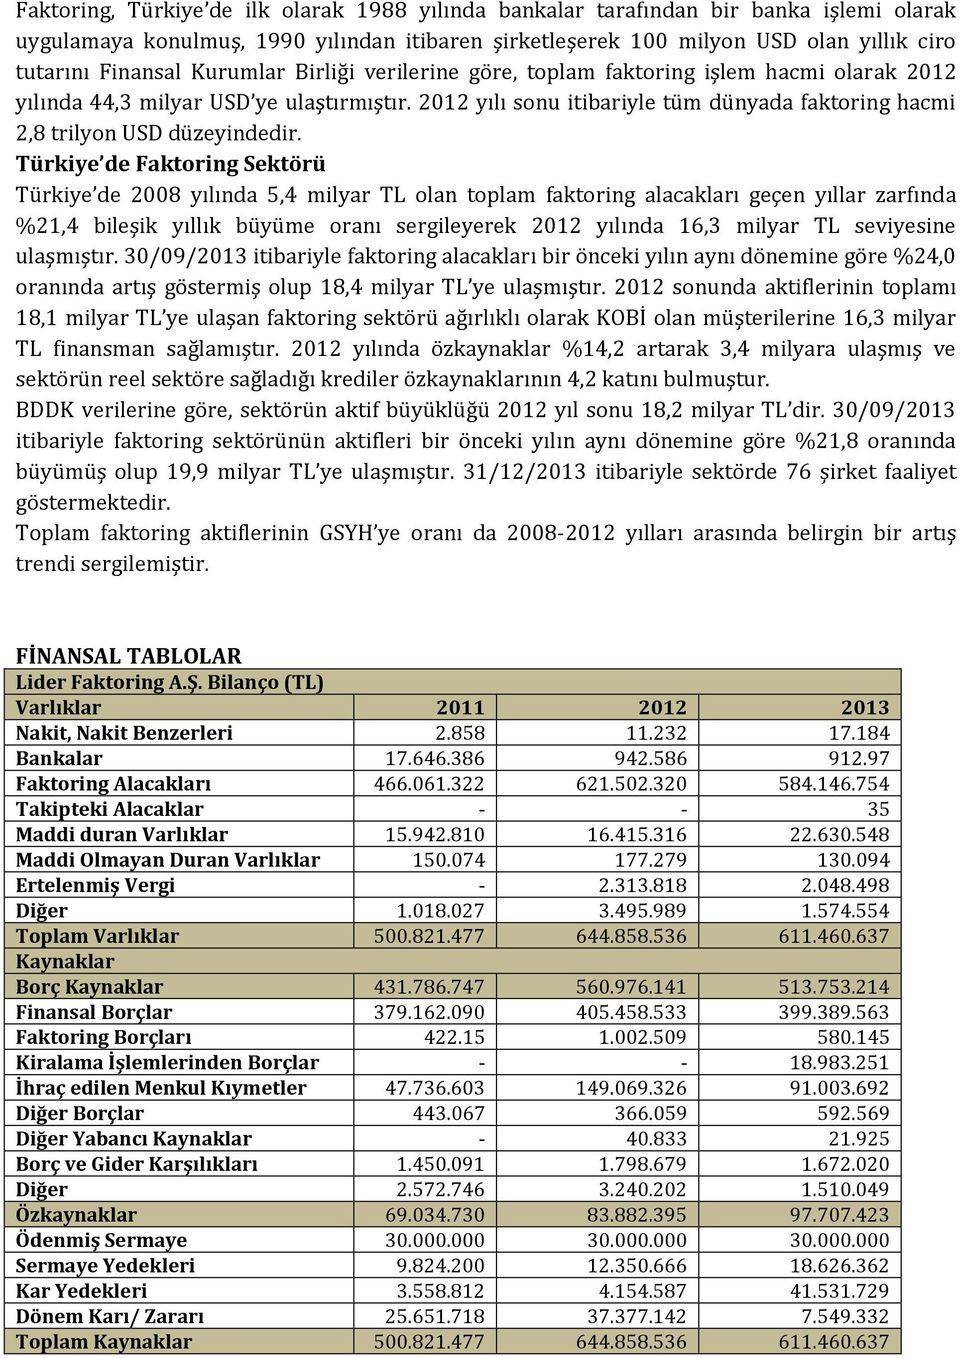 Türkiye de Faktoring Sektörü Türkiye de 2008 yılında 5,4 milyar TL olan toplam faktoring alacakları geçen yıllar zarfında %21,4 bileşik yıllık büyüme oranı sergileyerek 2012 yılında 16,3 milyar TL